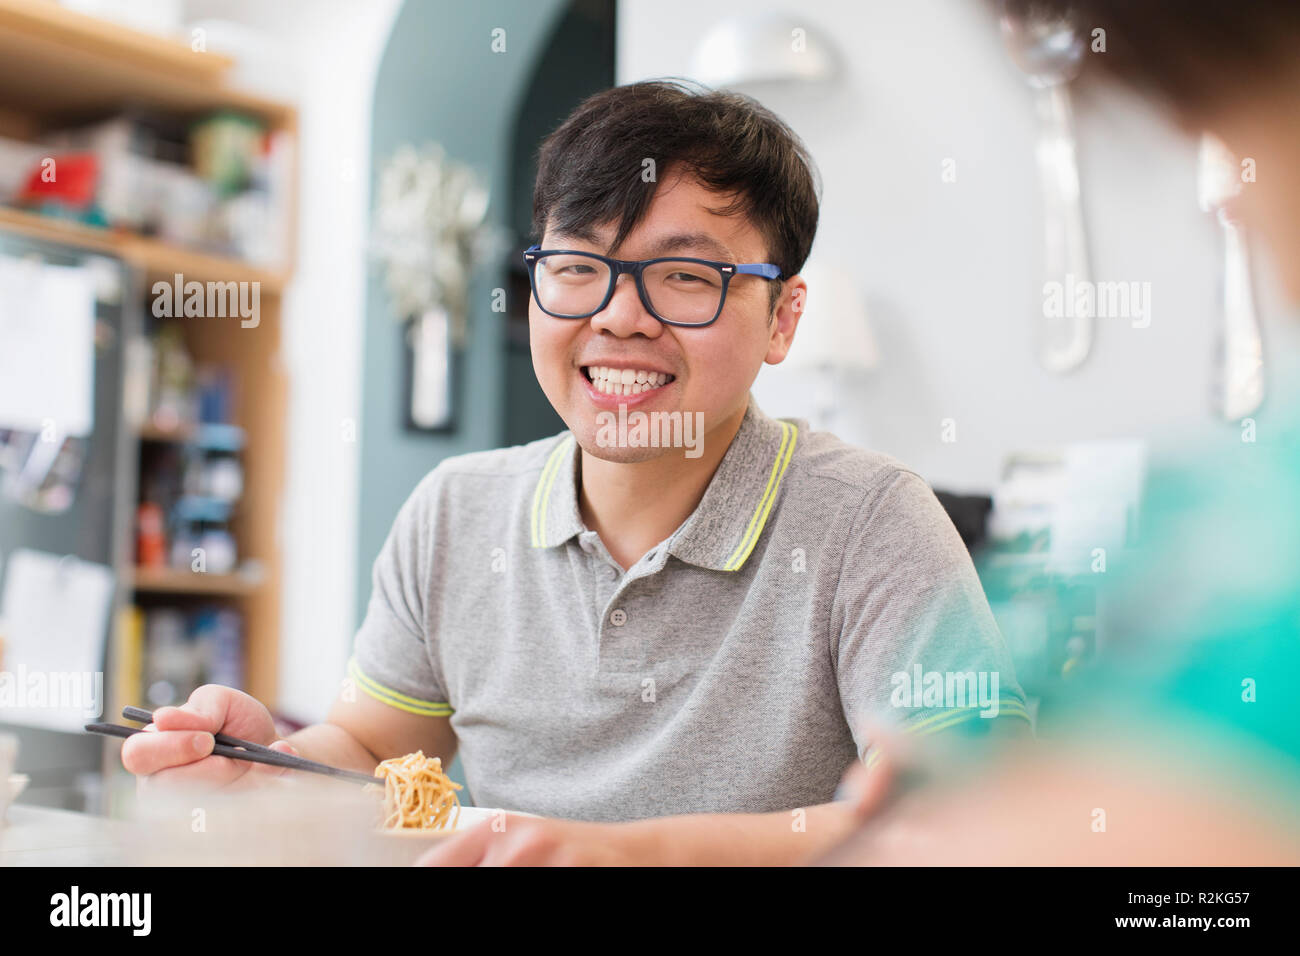 Portrait confident, smiling man eating noodles Stock Photo